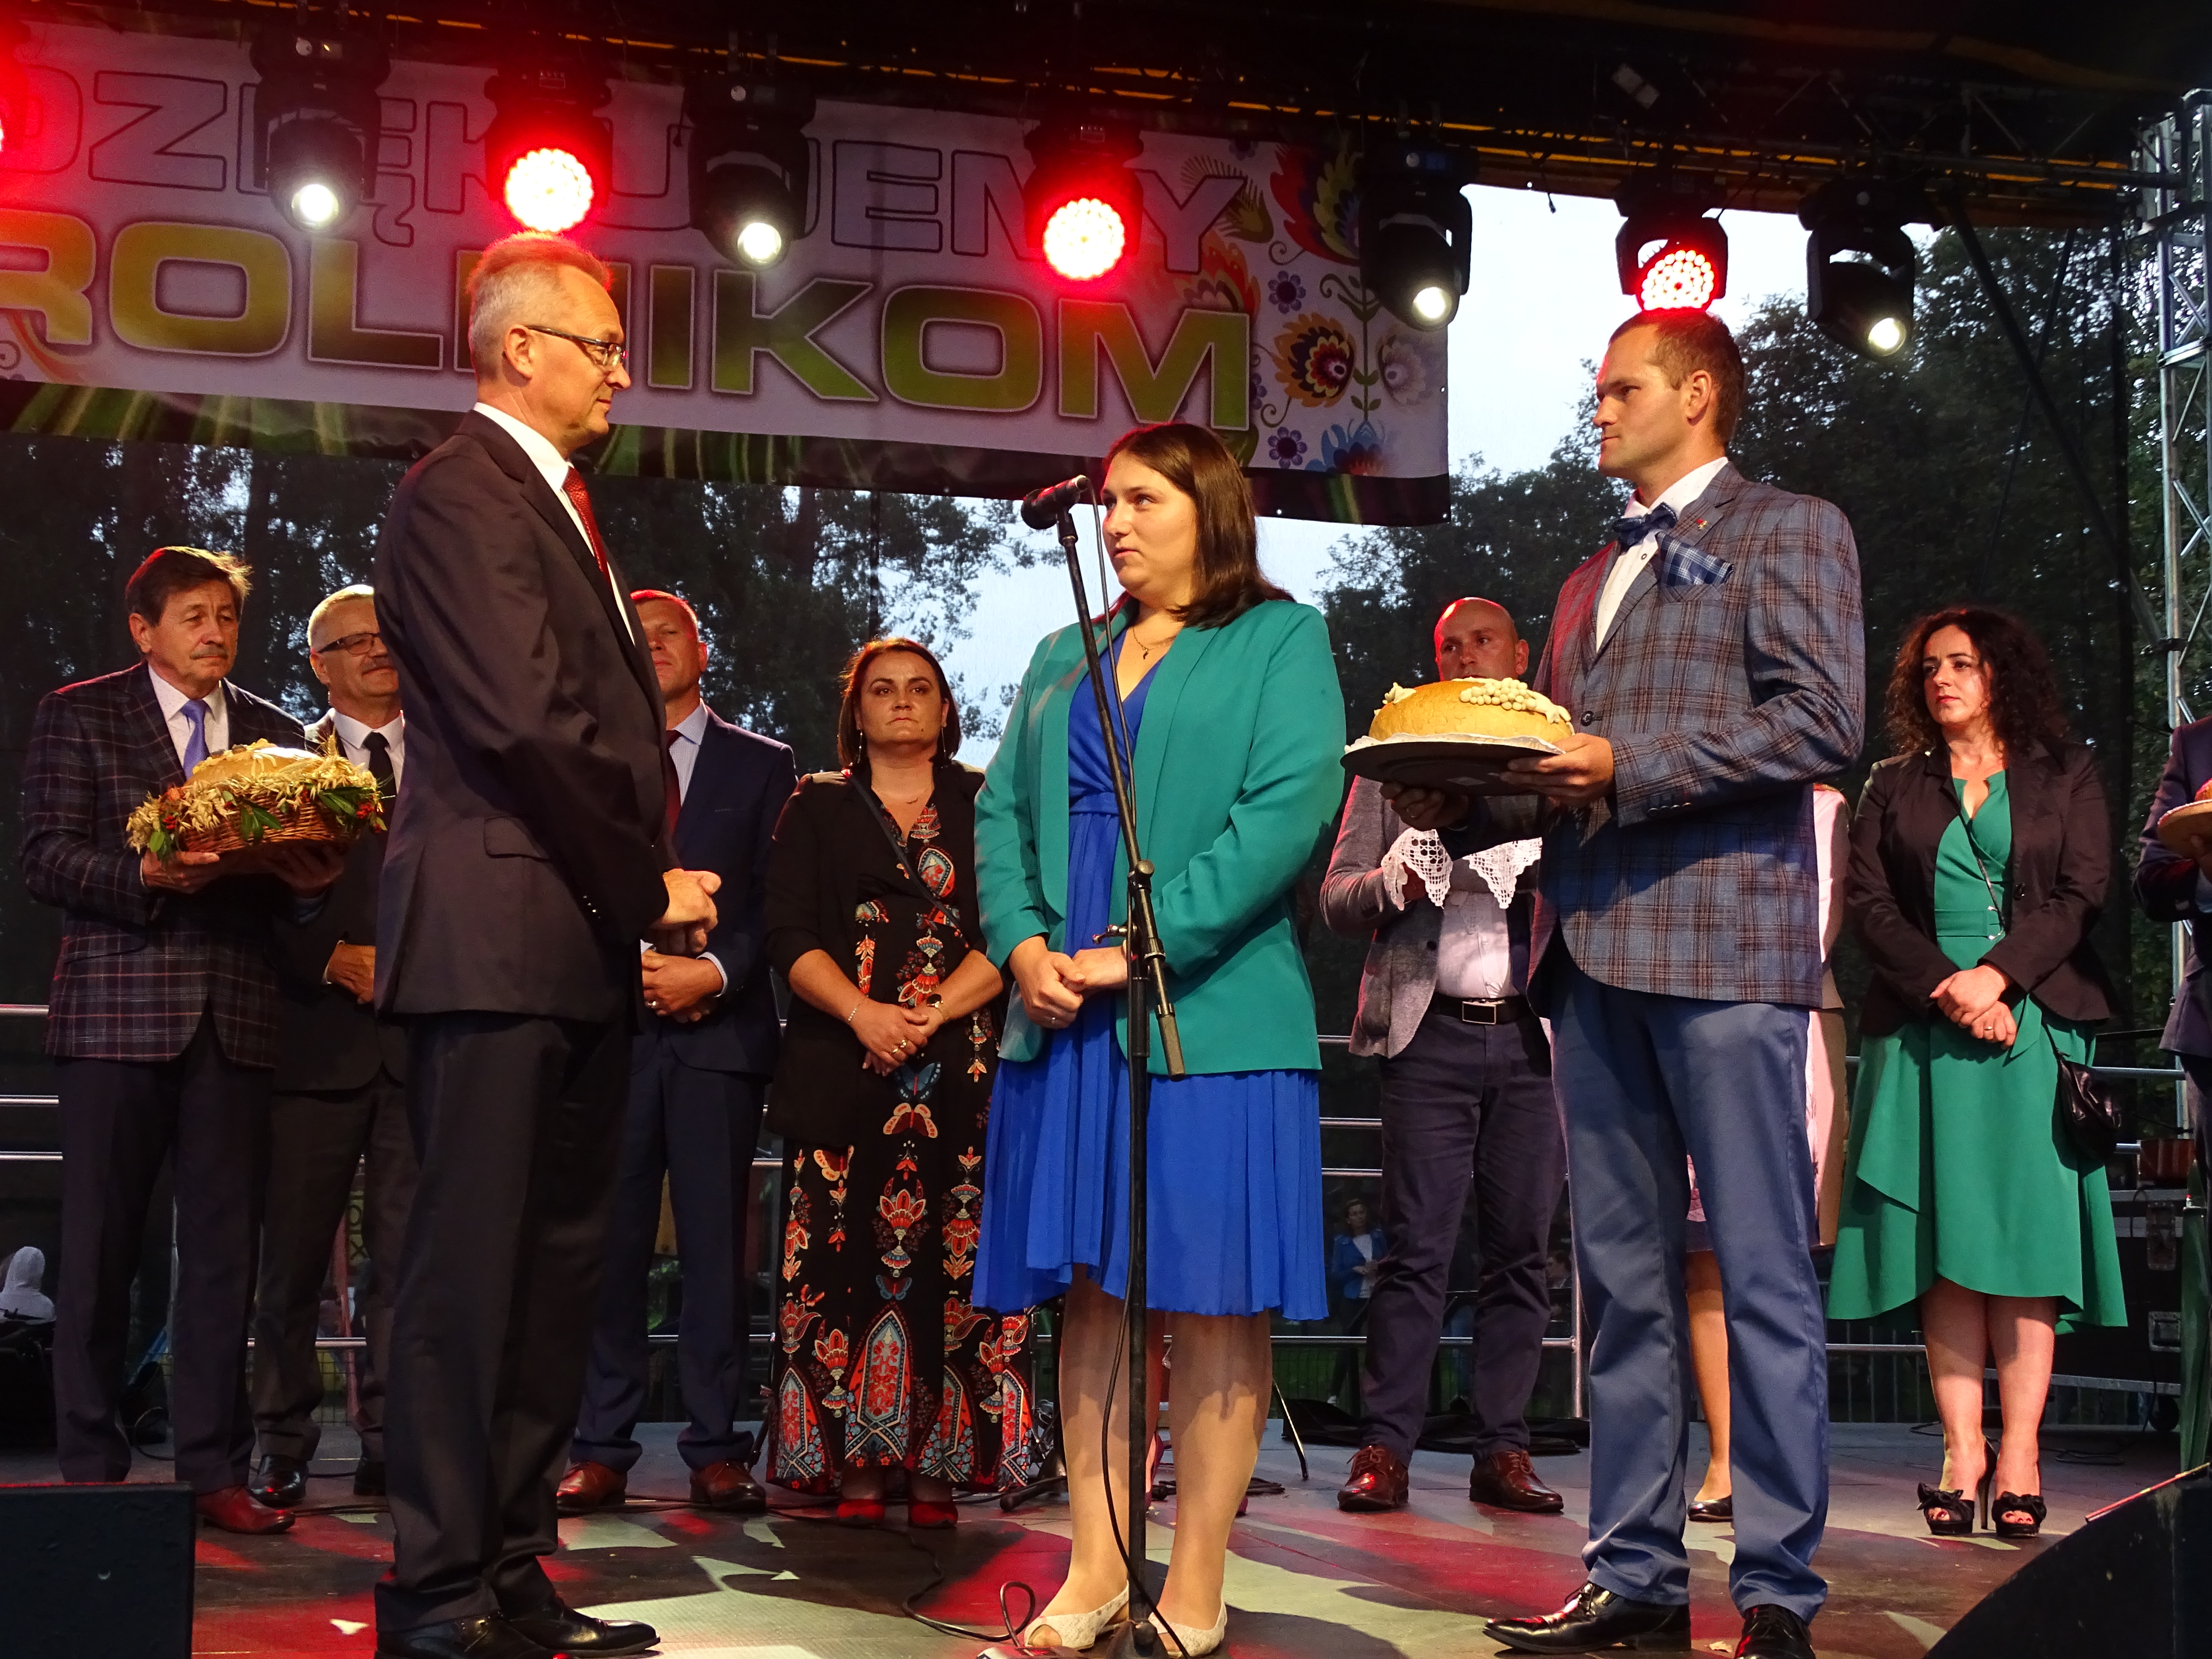 Burmistrz Zwolenia Arkadiusz Sulima chleb dożynkowy, będący tegorocznym dziękczynieniem otrzymał z rąk Starostów Gminnych: Martyny i Dominika Wnuk.